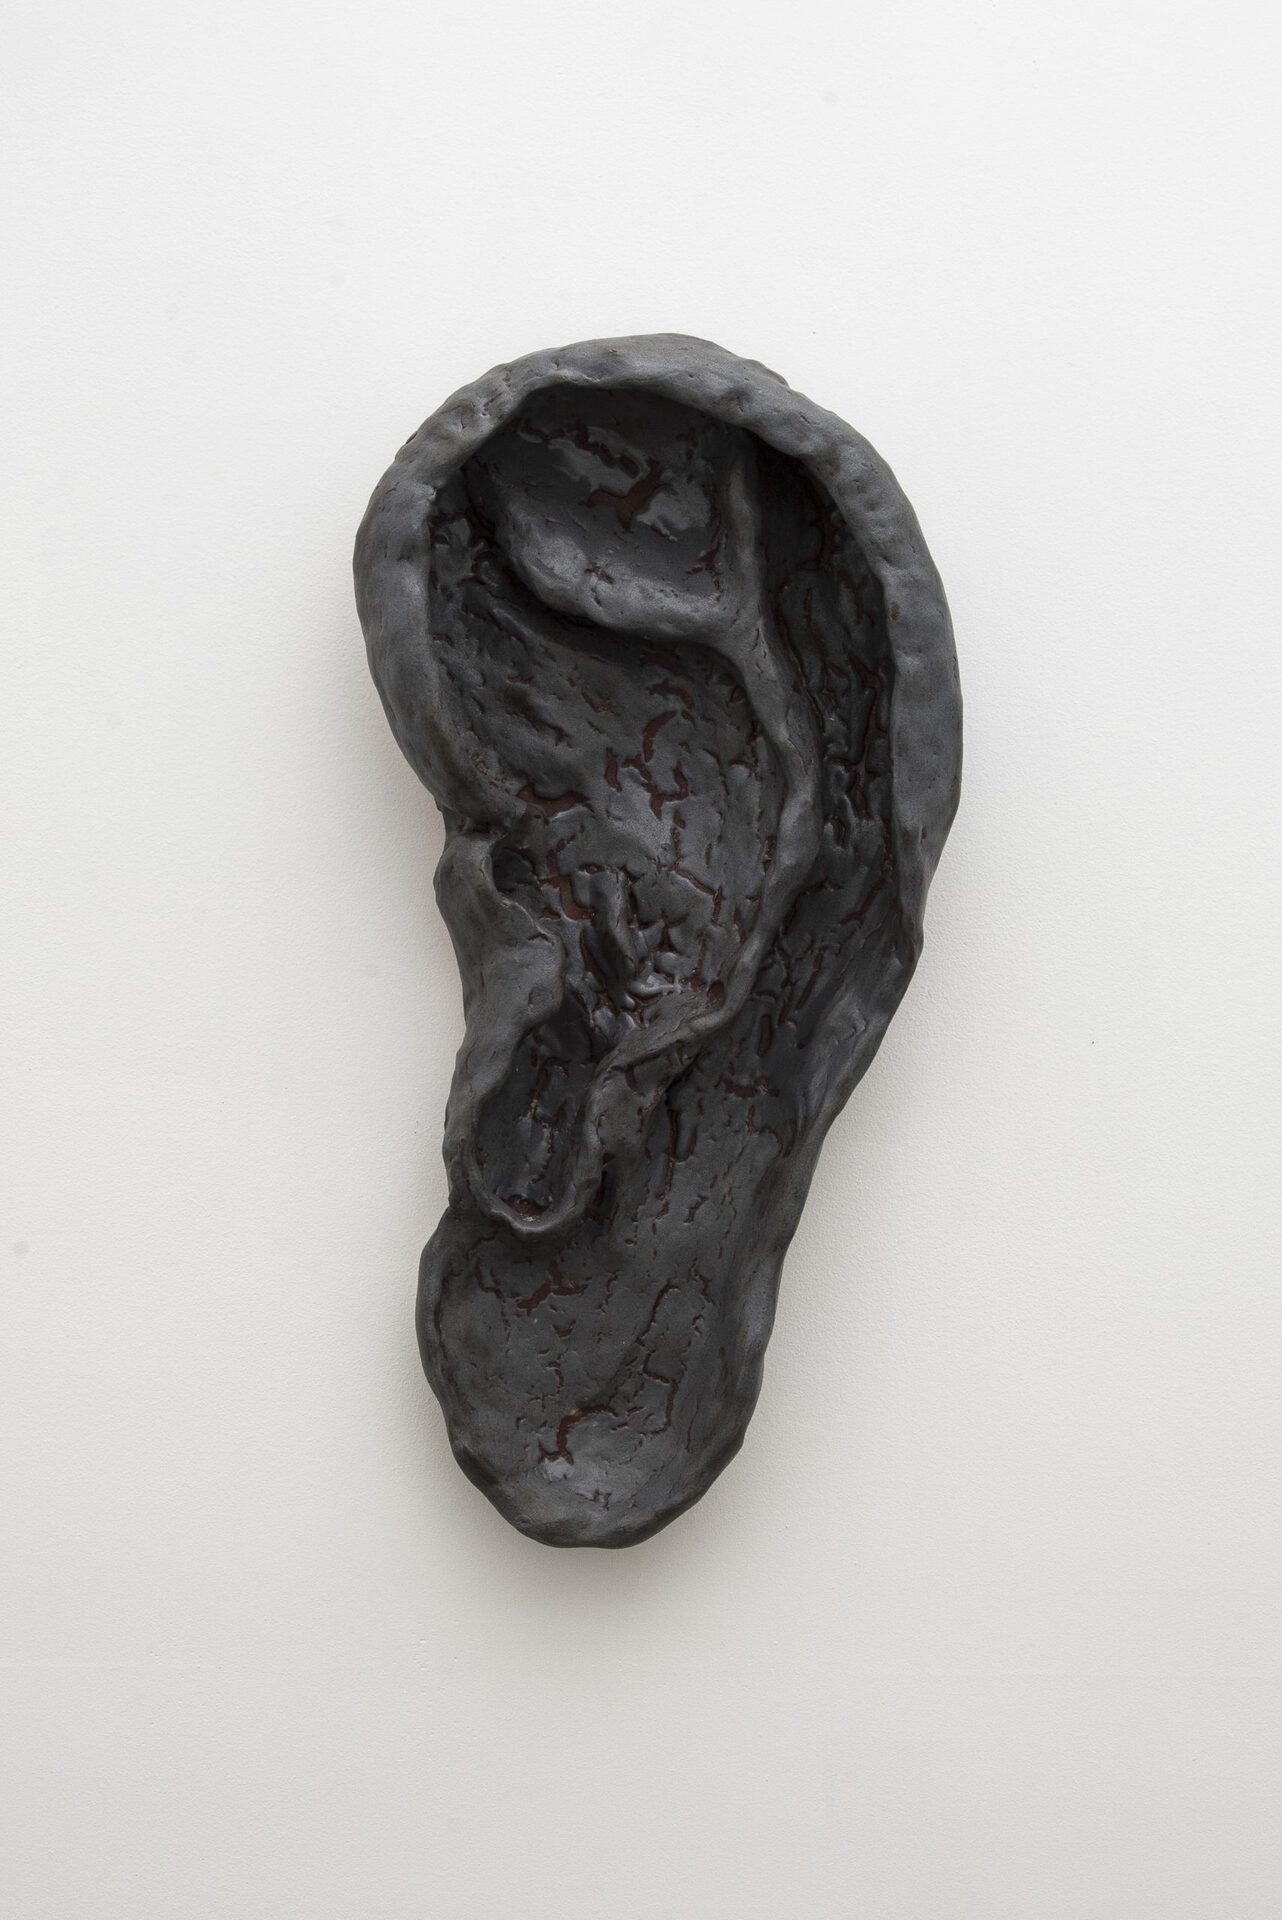 Amy Jane Parker, "Untitled, (lava ear)", 2021, Glazed earthenware, 35 x 58cm